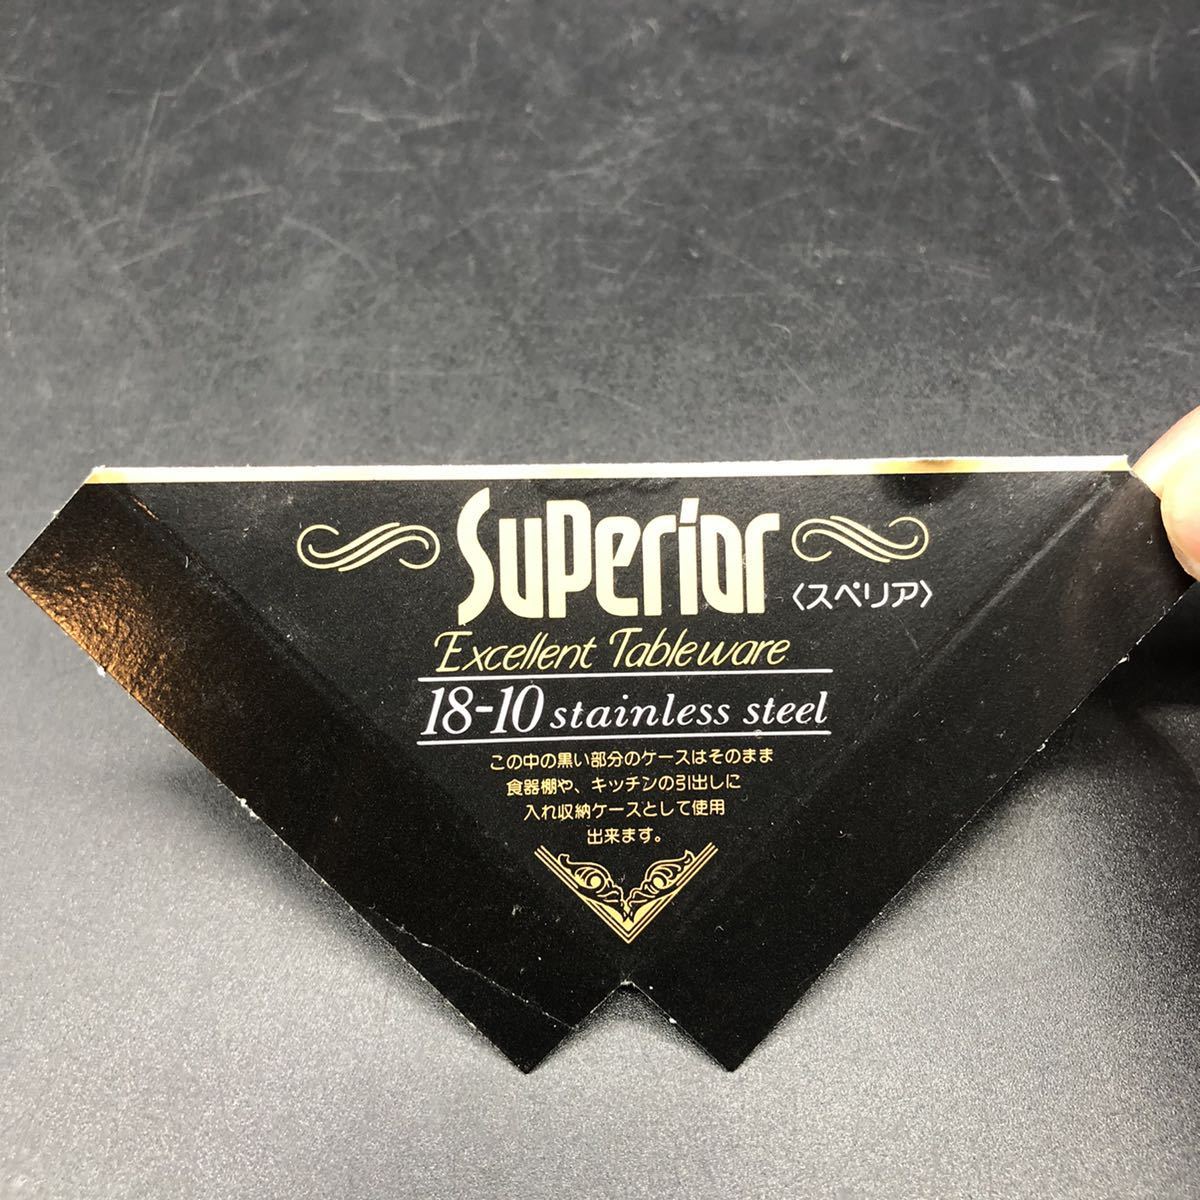 Superior superior ножи комплект 20шт.@18-10 нержавеющая сталь сталь вместе коробка столовый сервиз W19